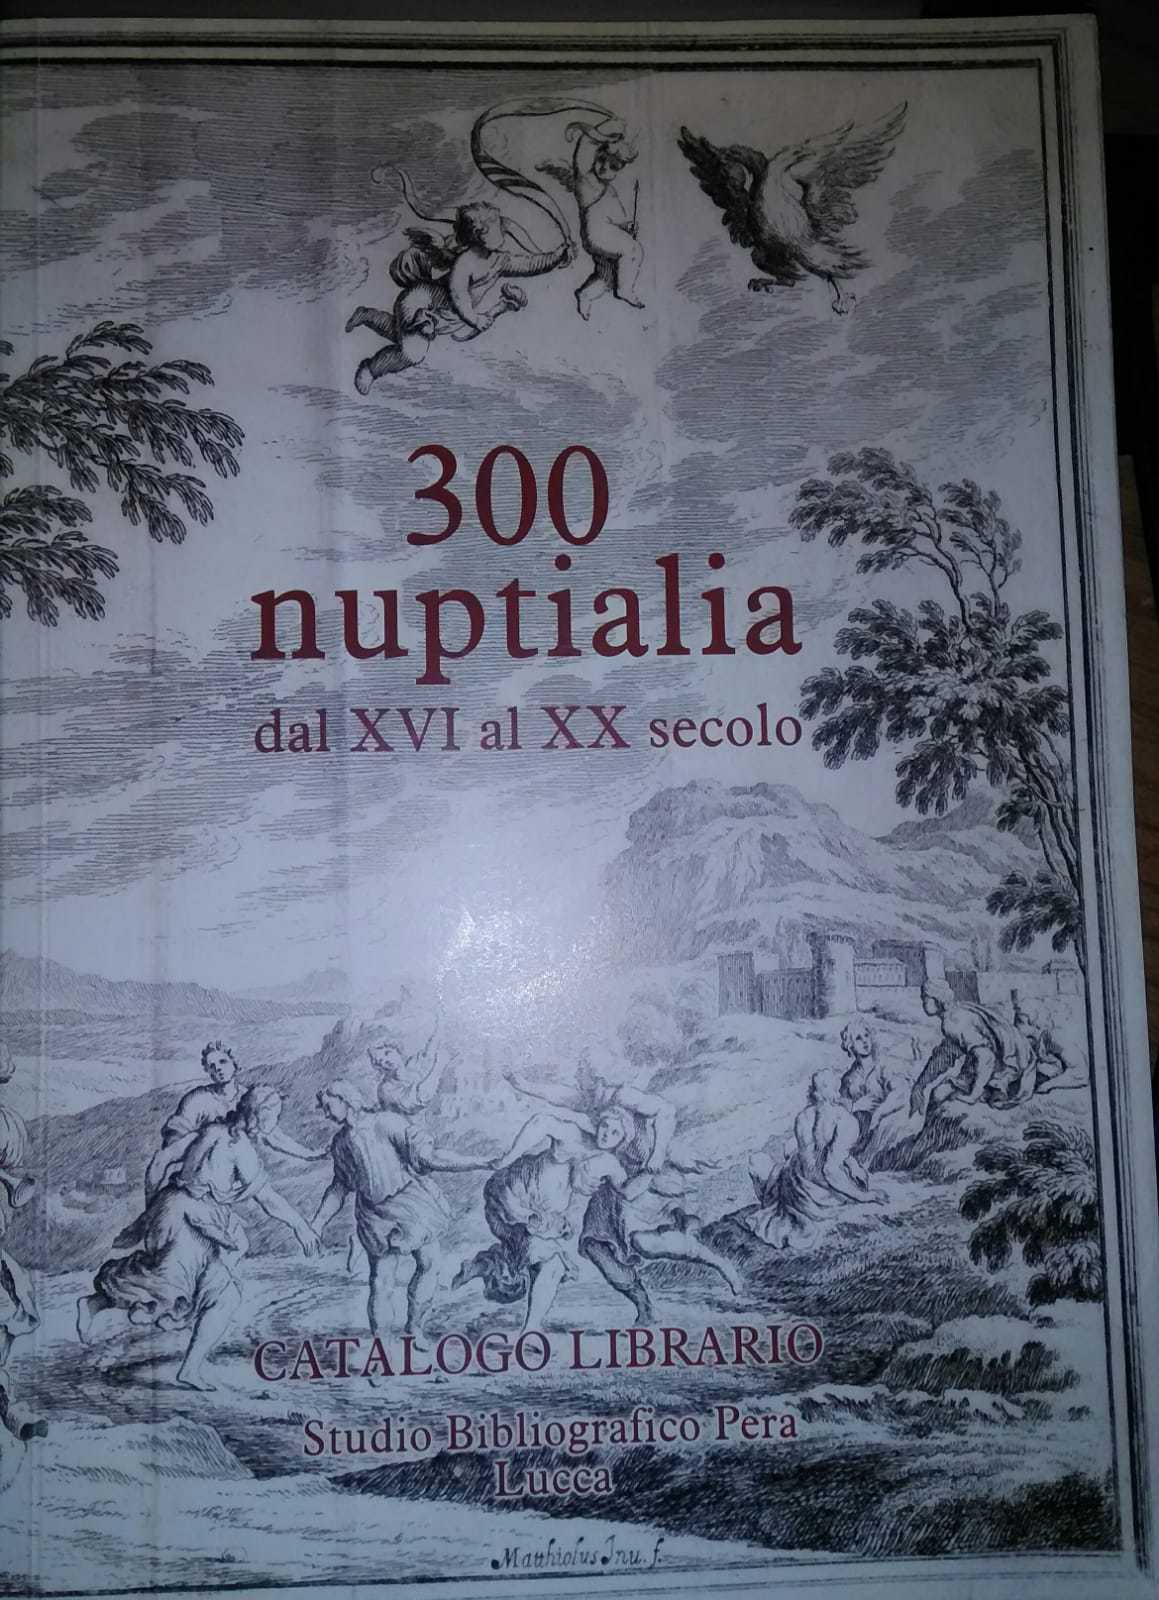 300 nuptialia dal XVI al XX secolo-Catalogo librario-Studio bibliografico Pera-S